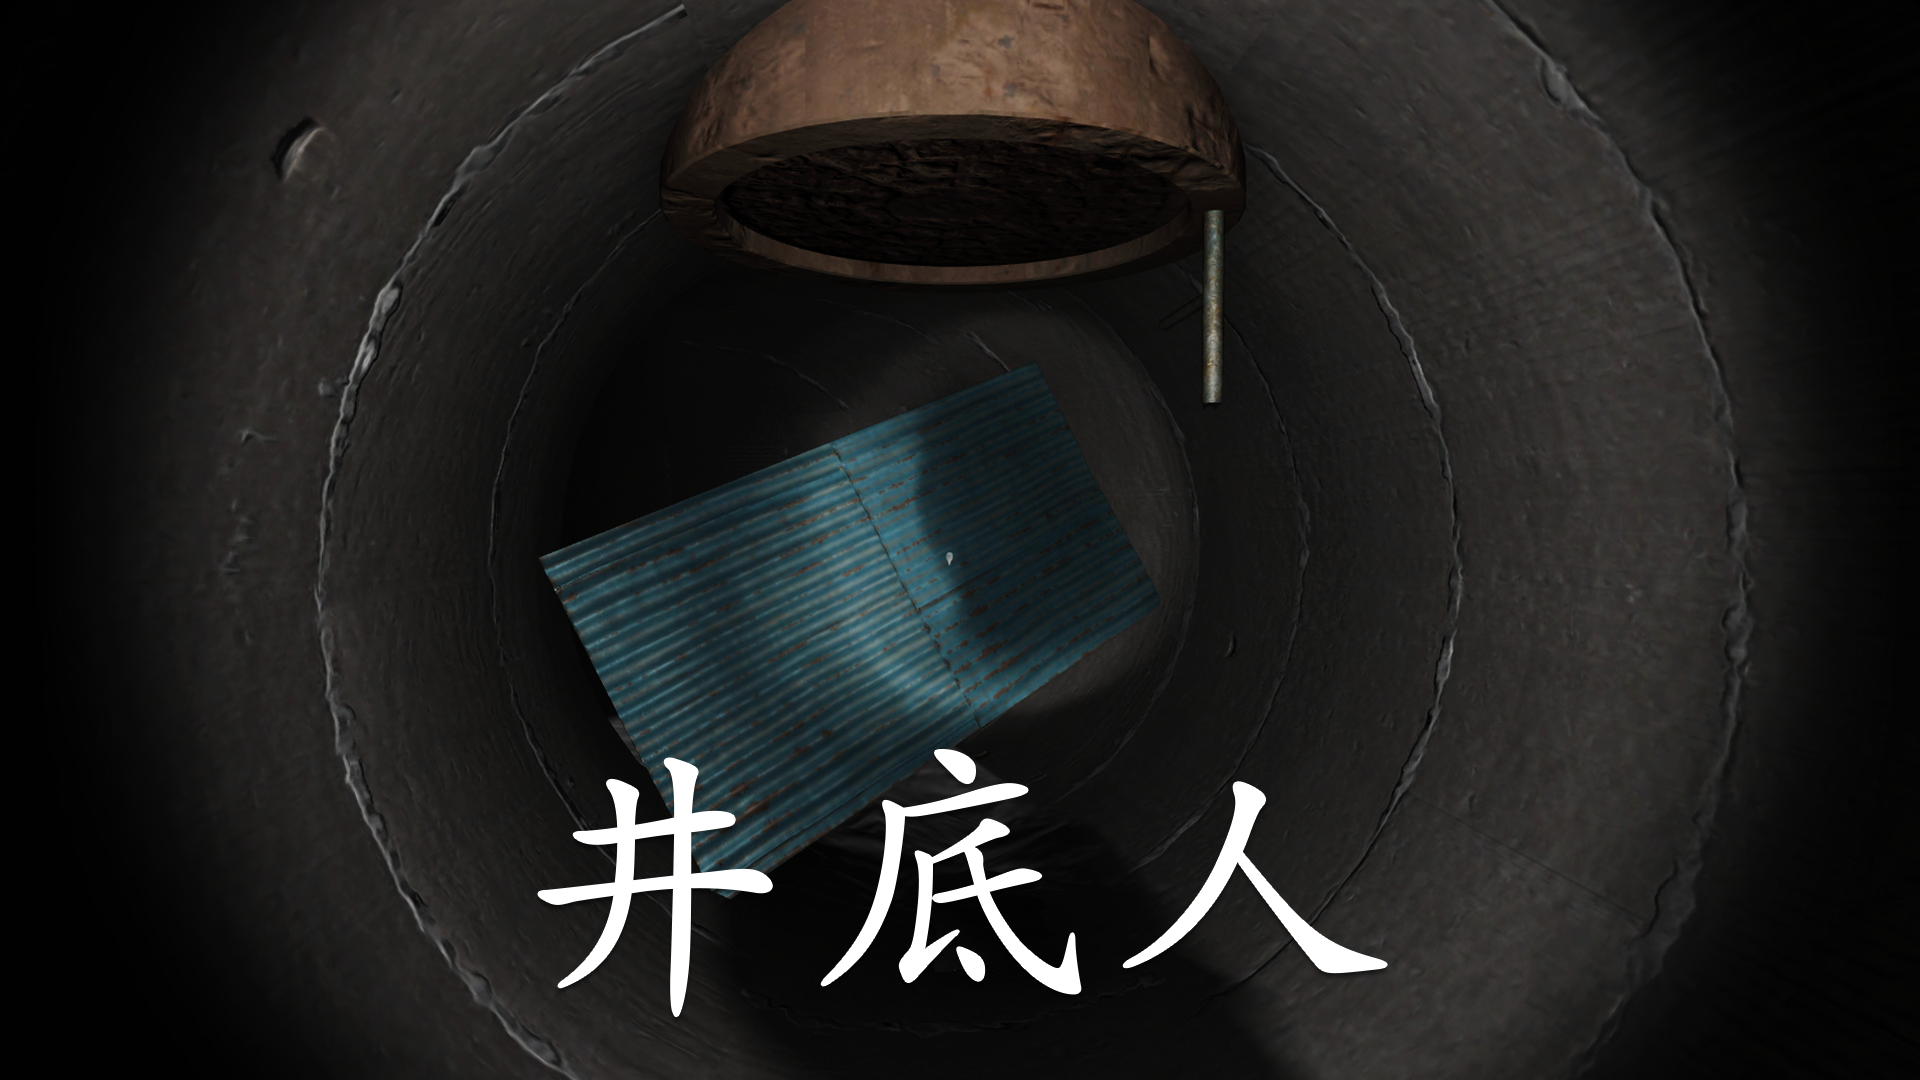 Banner of អាថ៌កំបាំងរបស់ស៊ុន ម៉ីឈី៖ បុរសនៅបាតអណ្តូង 1.0.0